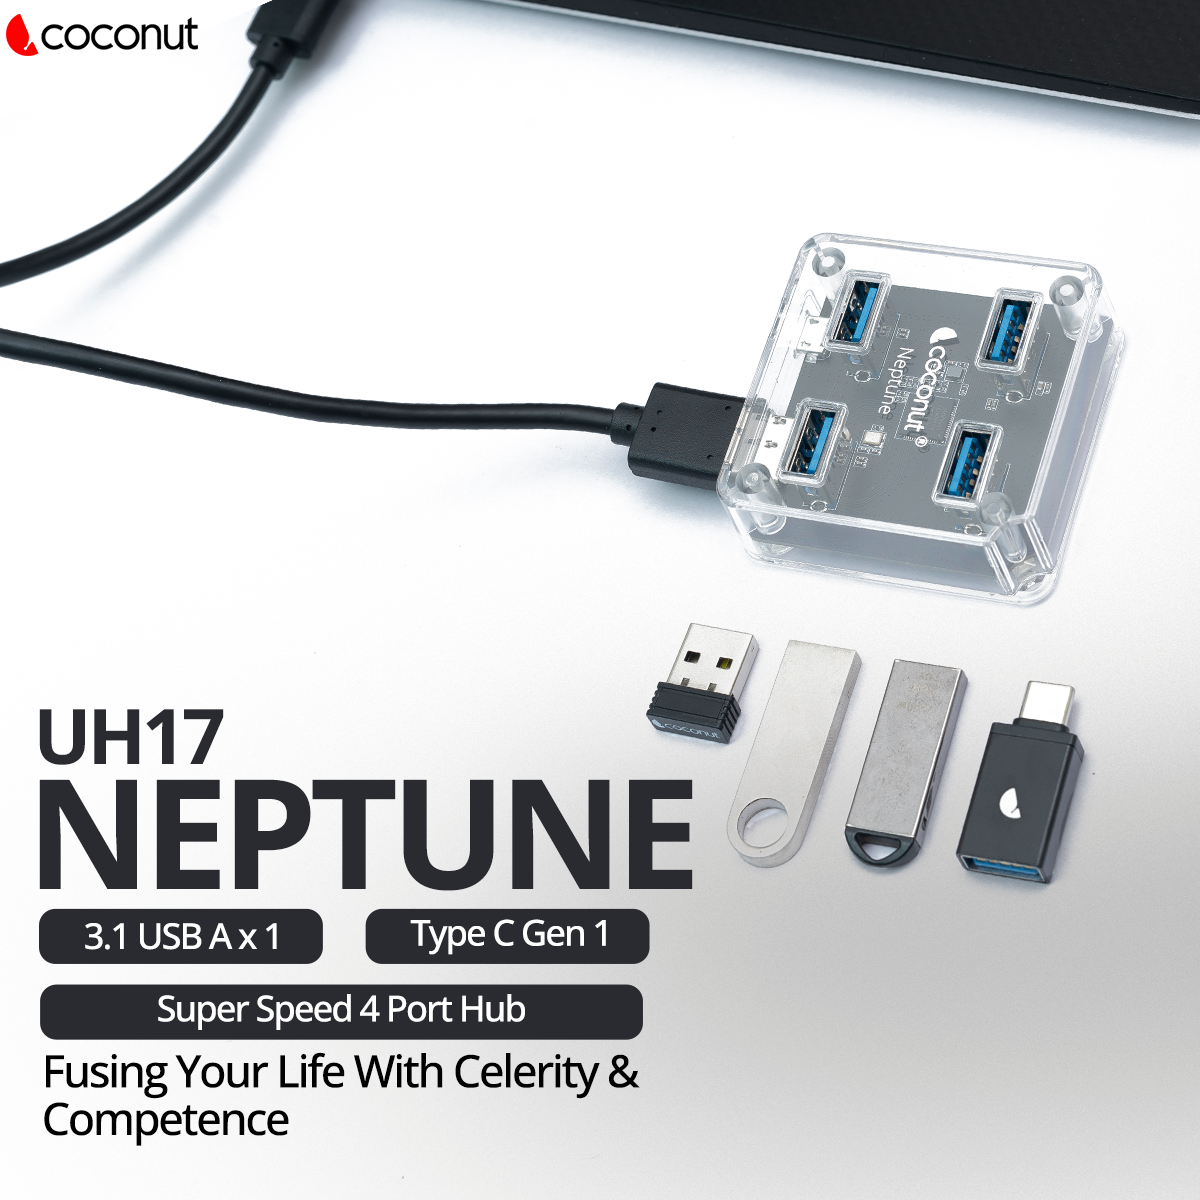 UH17 Neptune 4 Port USB 3.1 Hub, Transparent Design